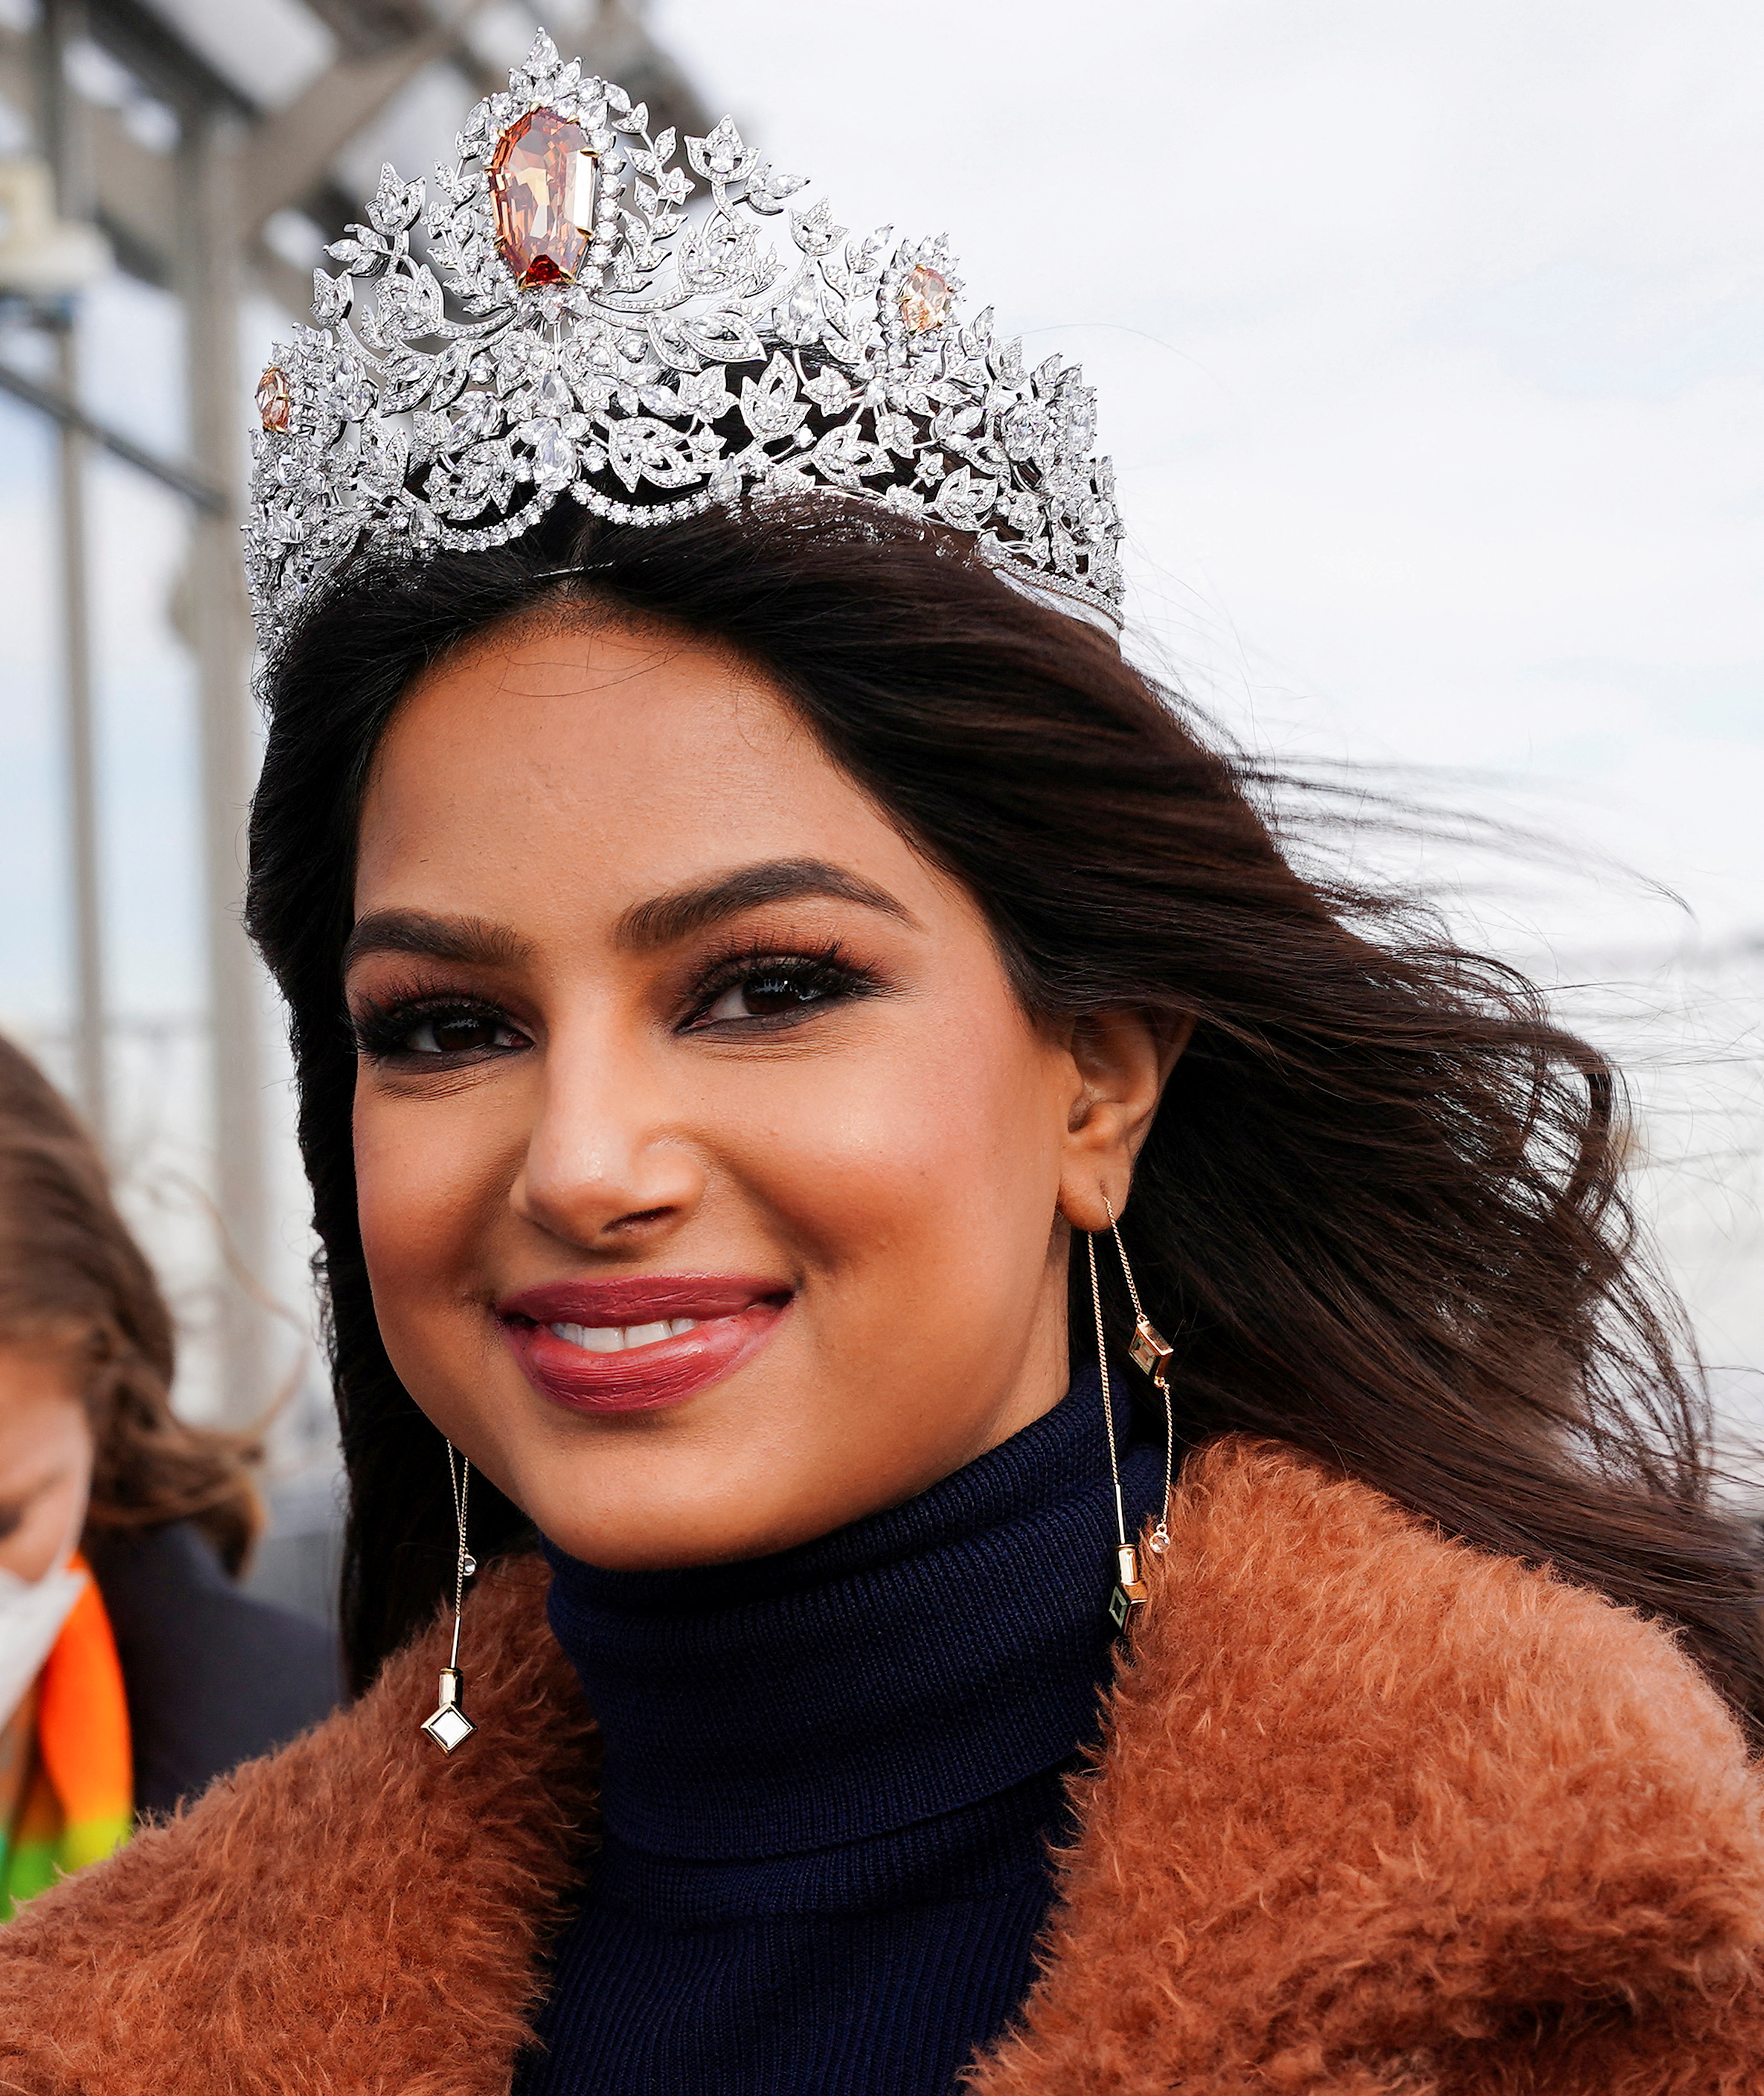 Miss Universe Harnaaz Sandhu y su desmedido aumento de peso por el que ha sido duramente cuestionada. REUTERS/Carlo Allegri